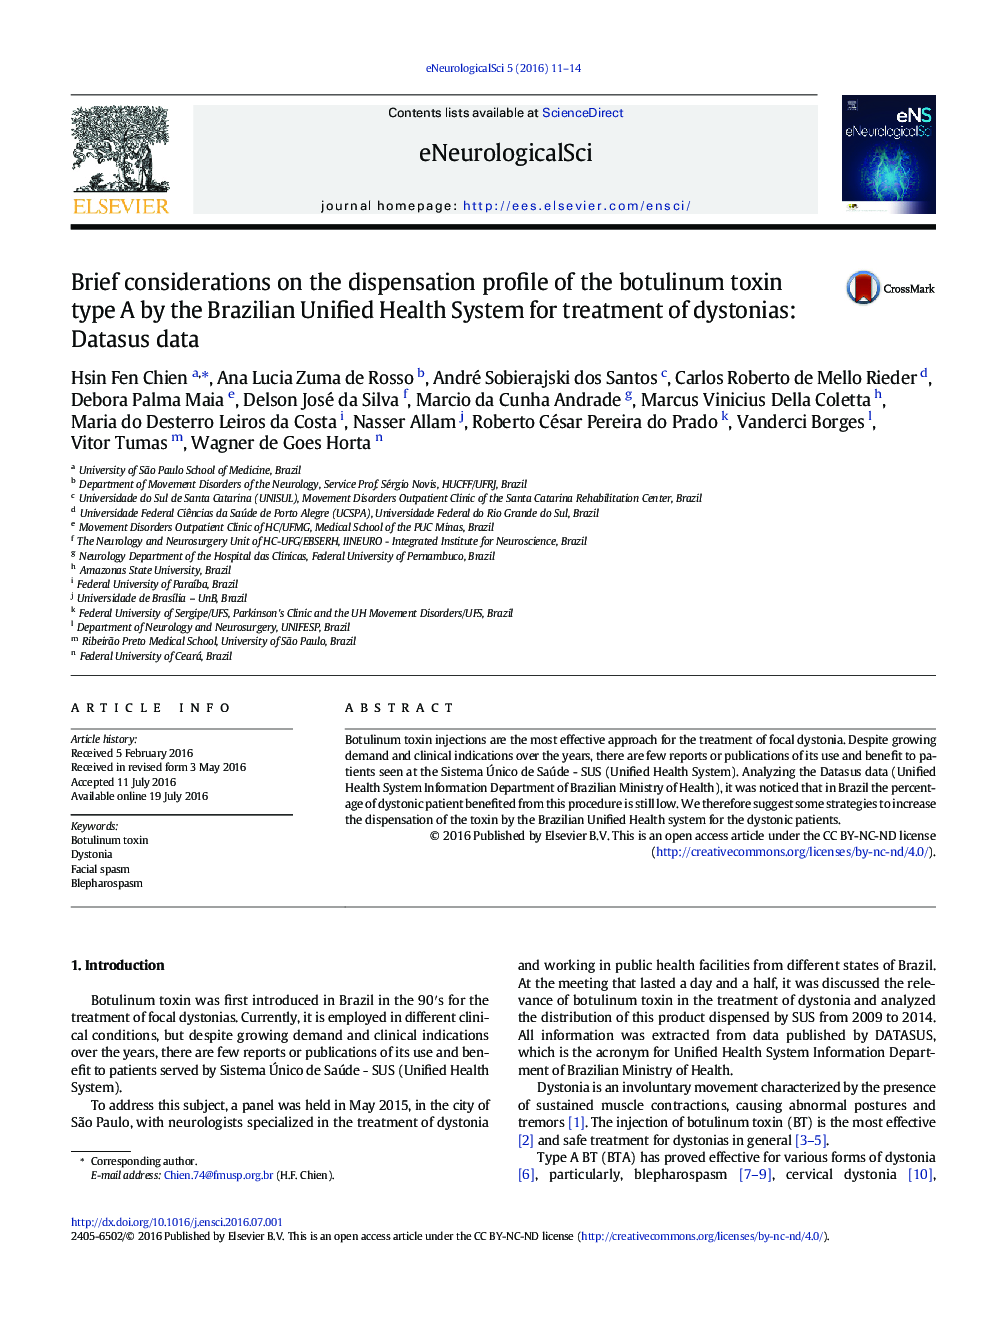 ملاحظات کوتاه در مورد مشخصات تقسیم سم بوتولینوم نوع A توسط سیستم بهداشت و درمان یکپارچه برزیل برای درمان dystonias: داده Datasus